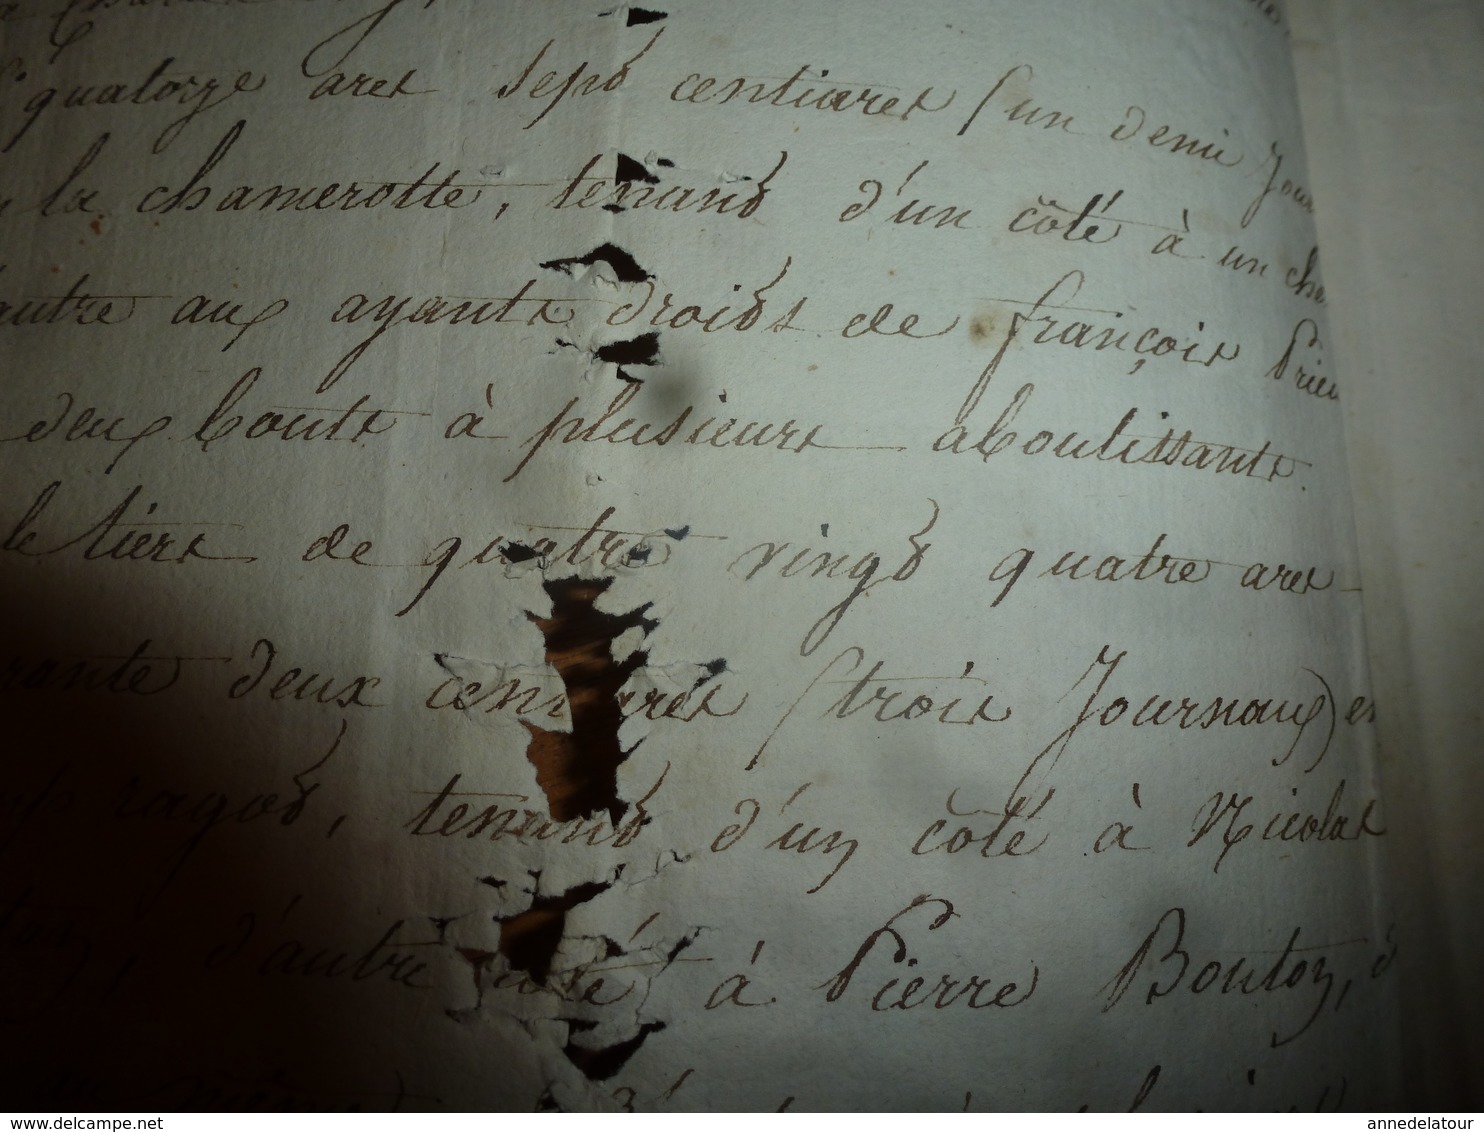 1819 Manuscrits notariés avec cachets concerne Jean Lanieu laboureur à Charrey